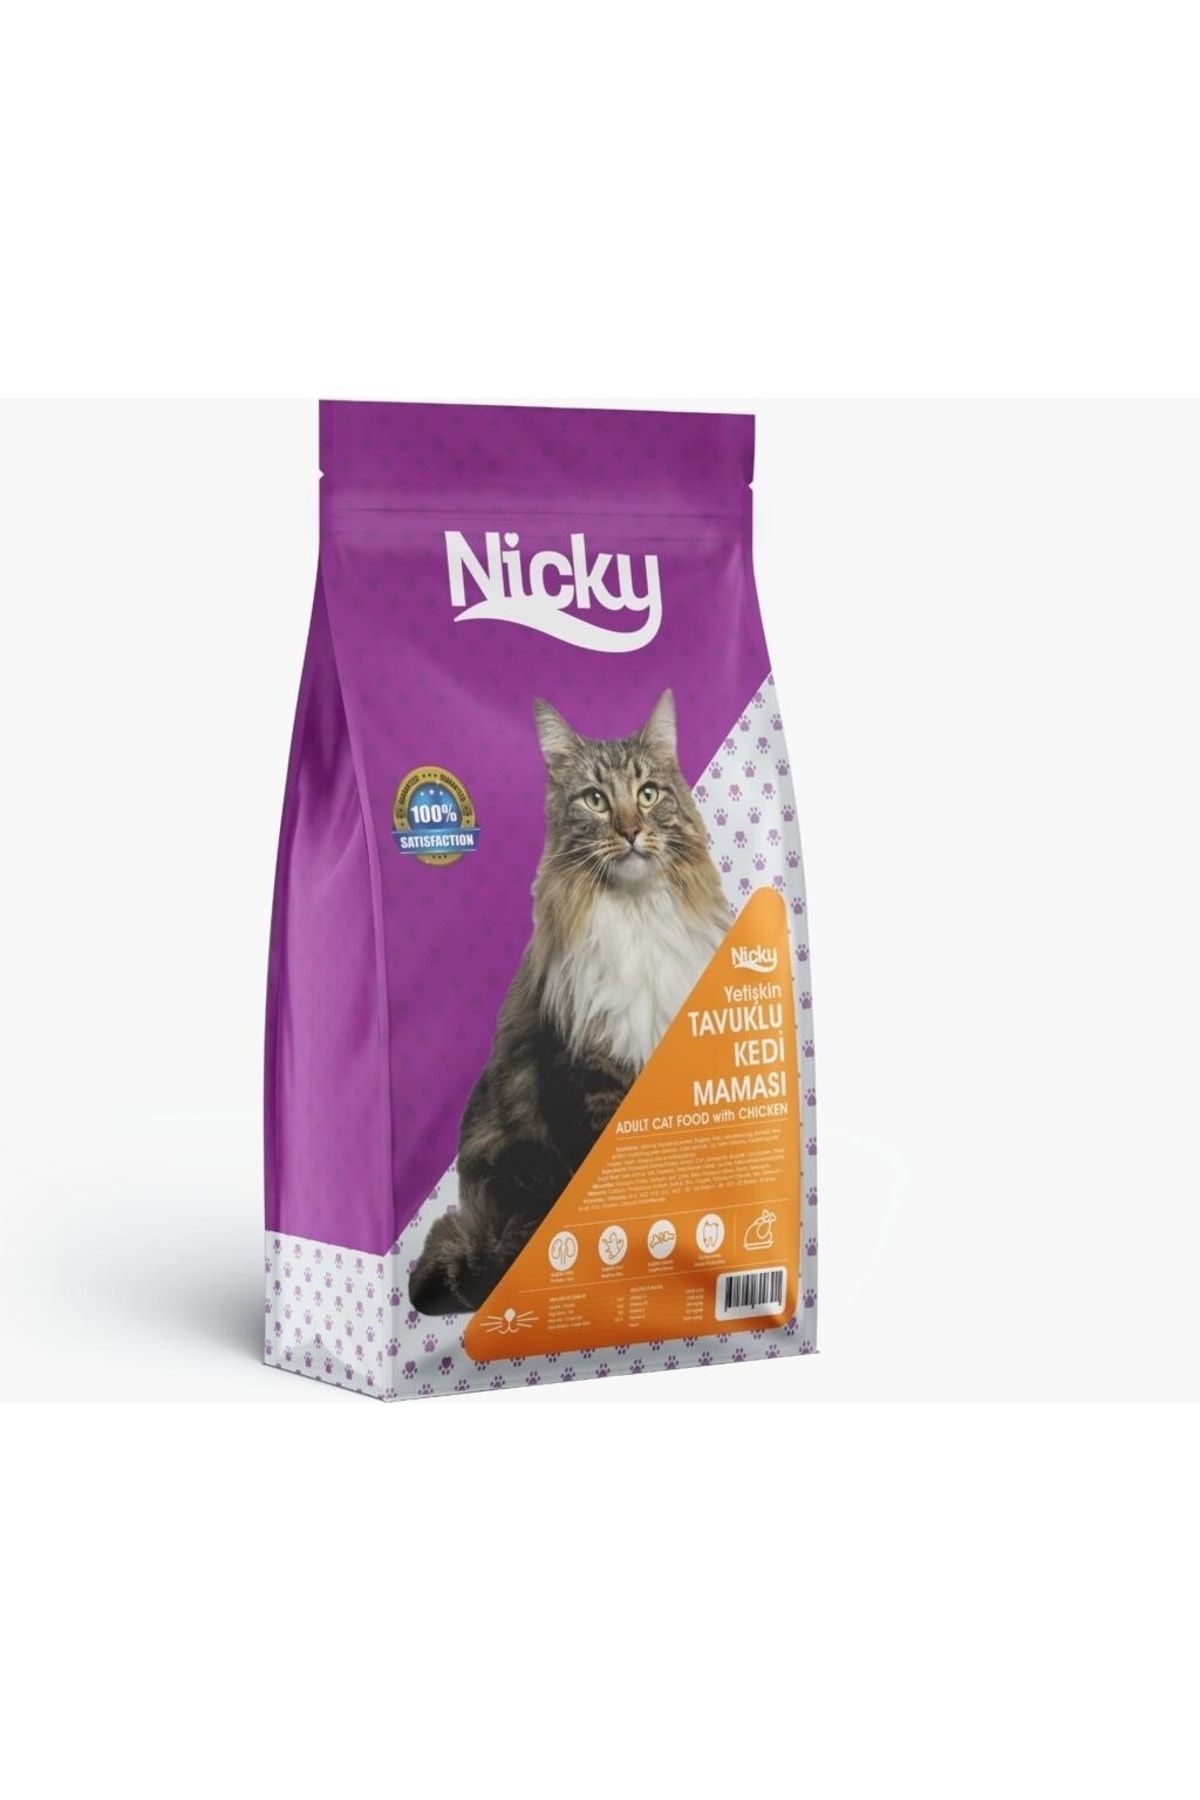 Nicky Yetişkin Tavuklu Kedi Maması - 15 Kg